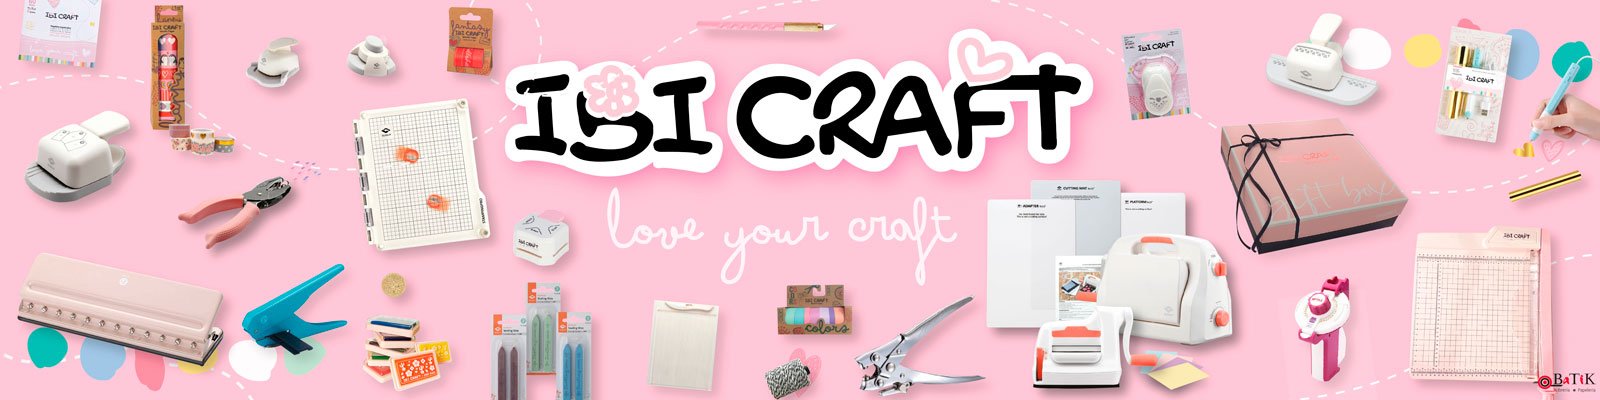 Ibi craft